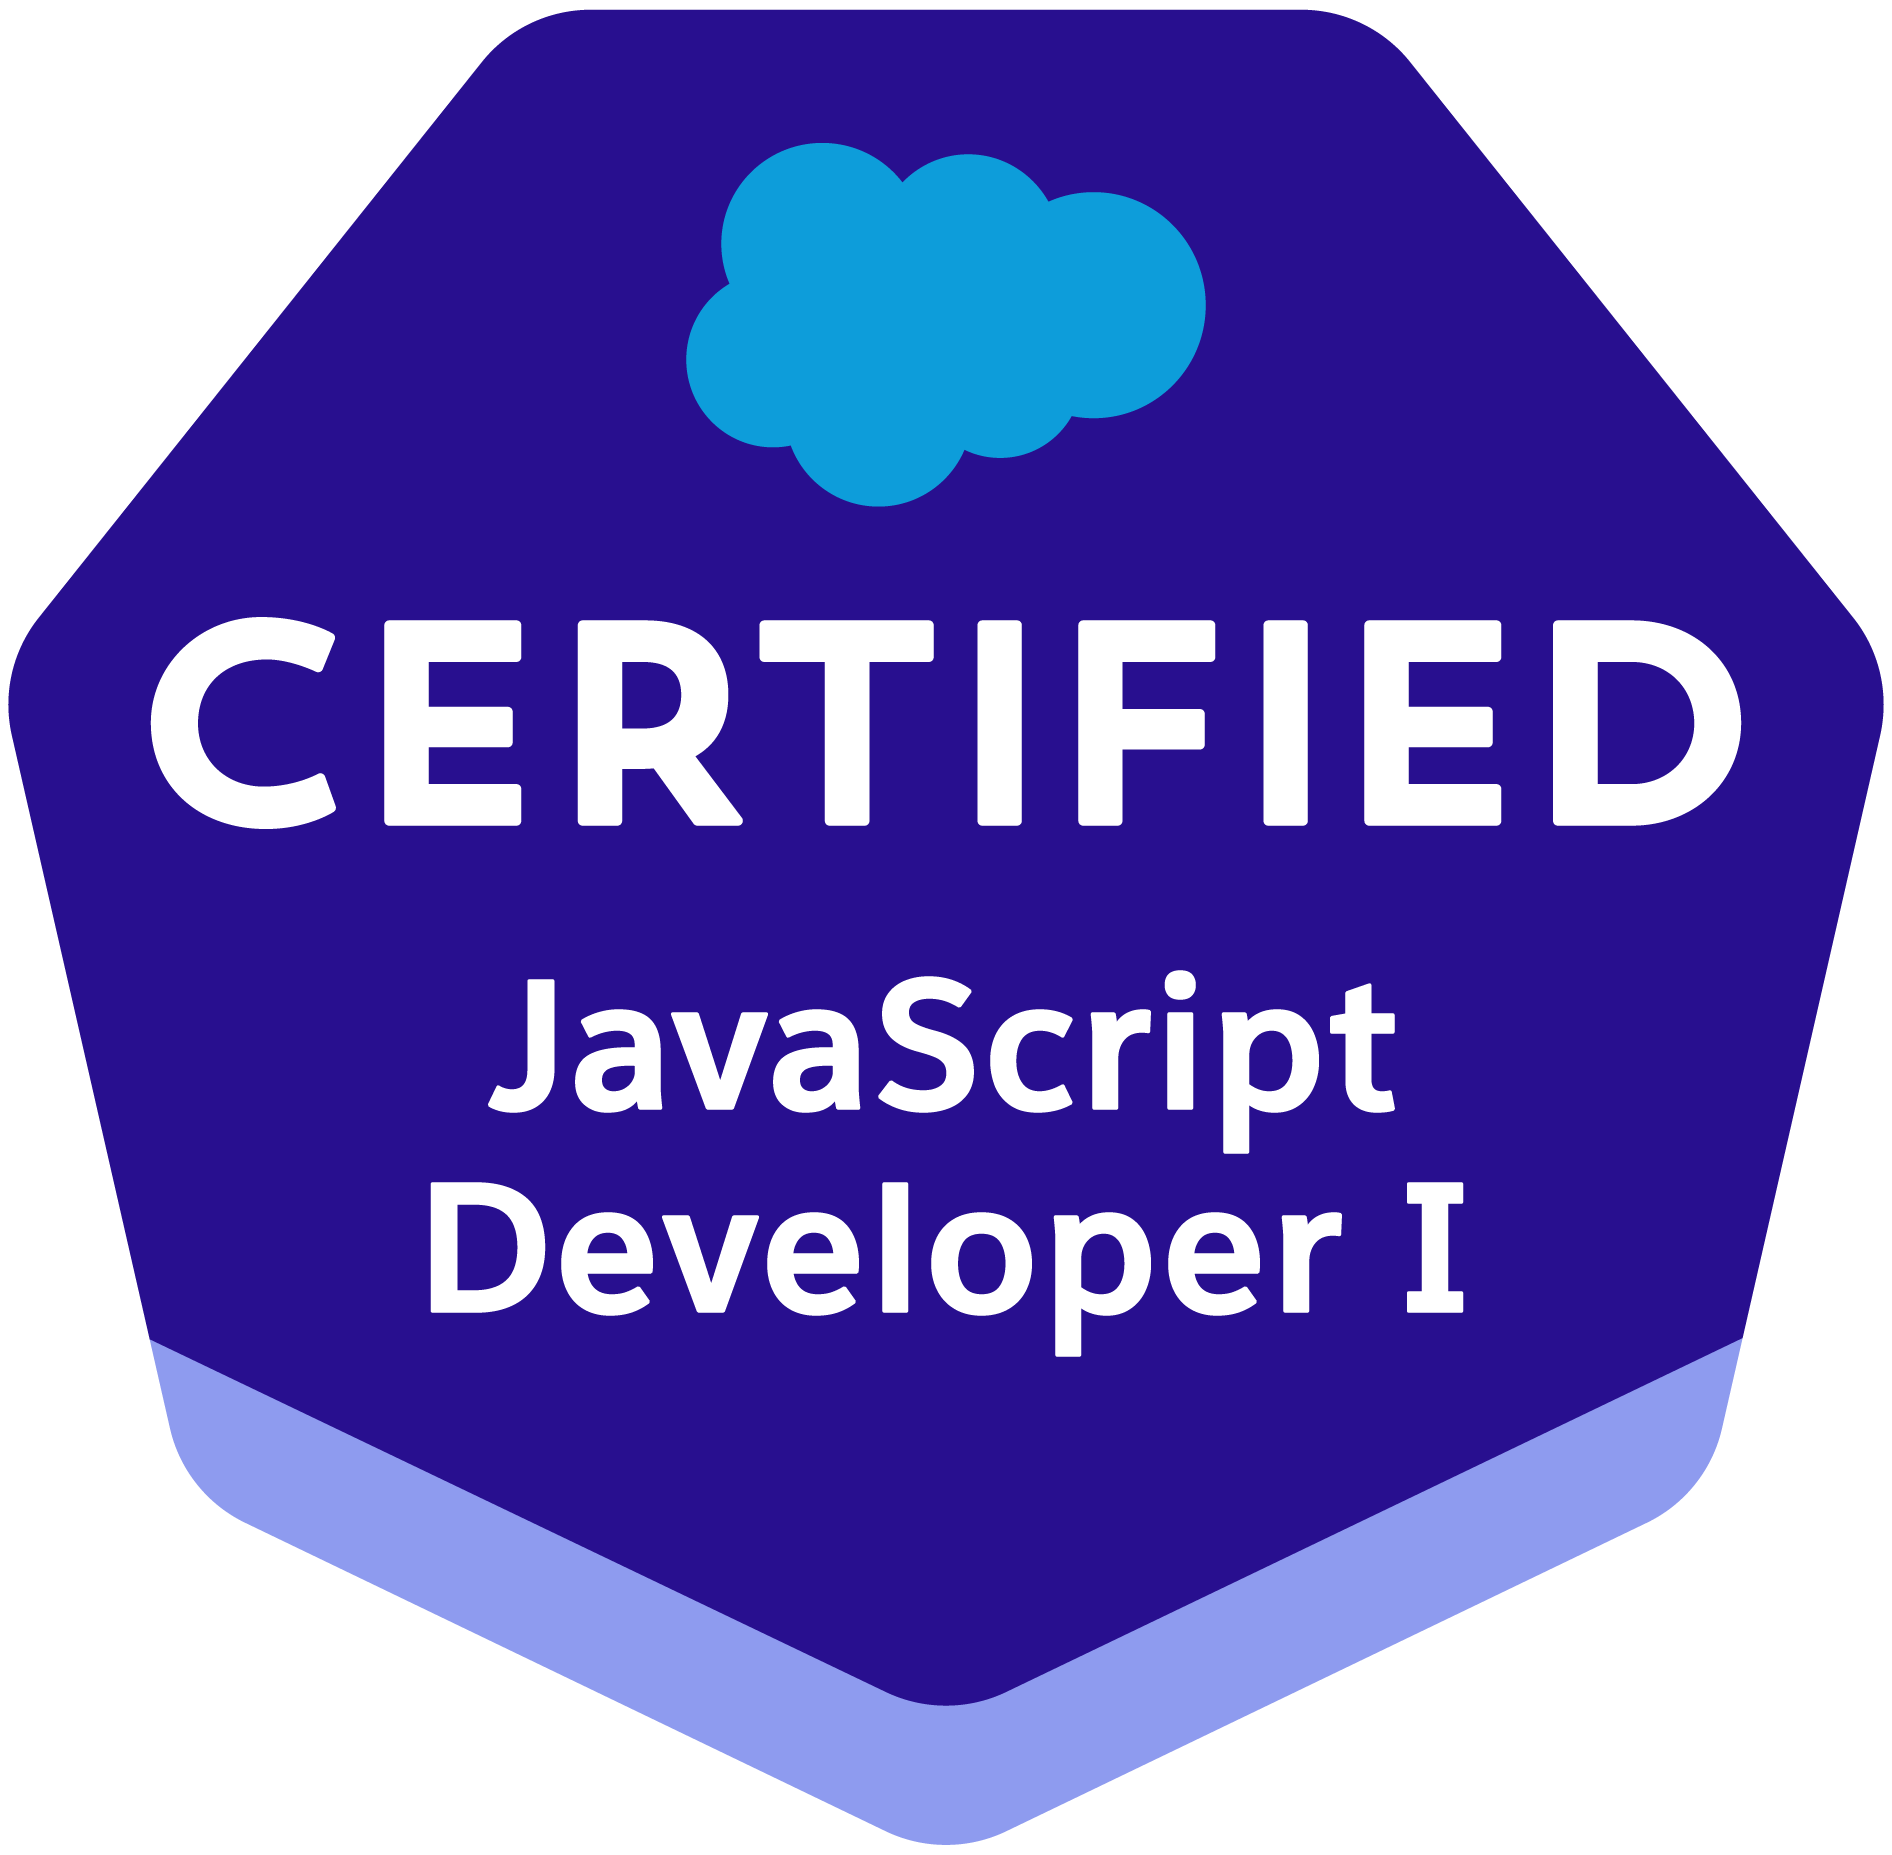 Salesforce Certified JavaScript Developer I badge